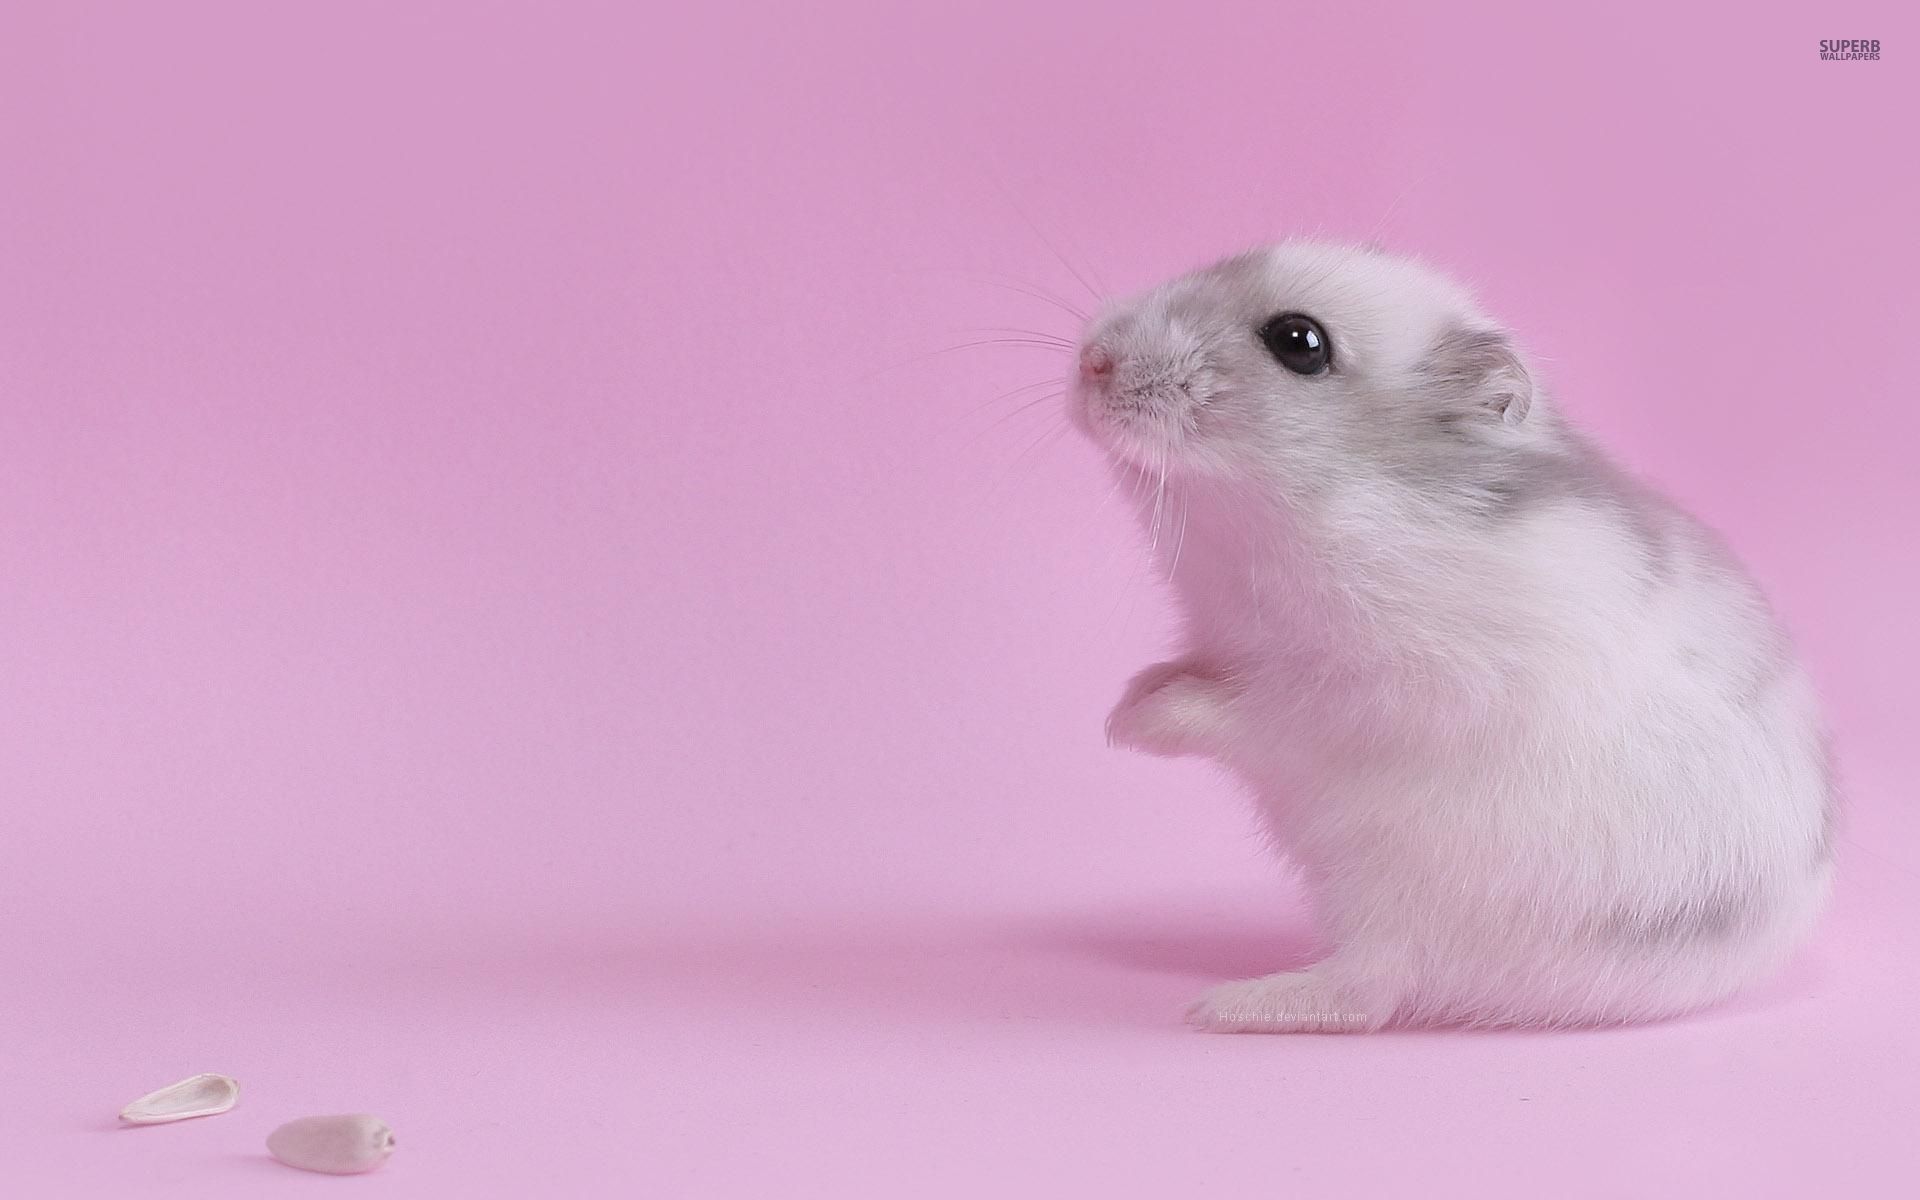 Cute hamster wallpaper - Animal wallpapers